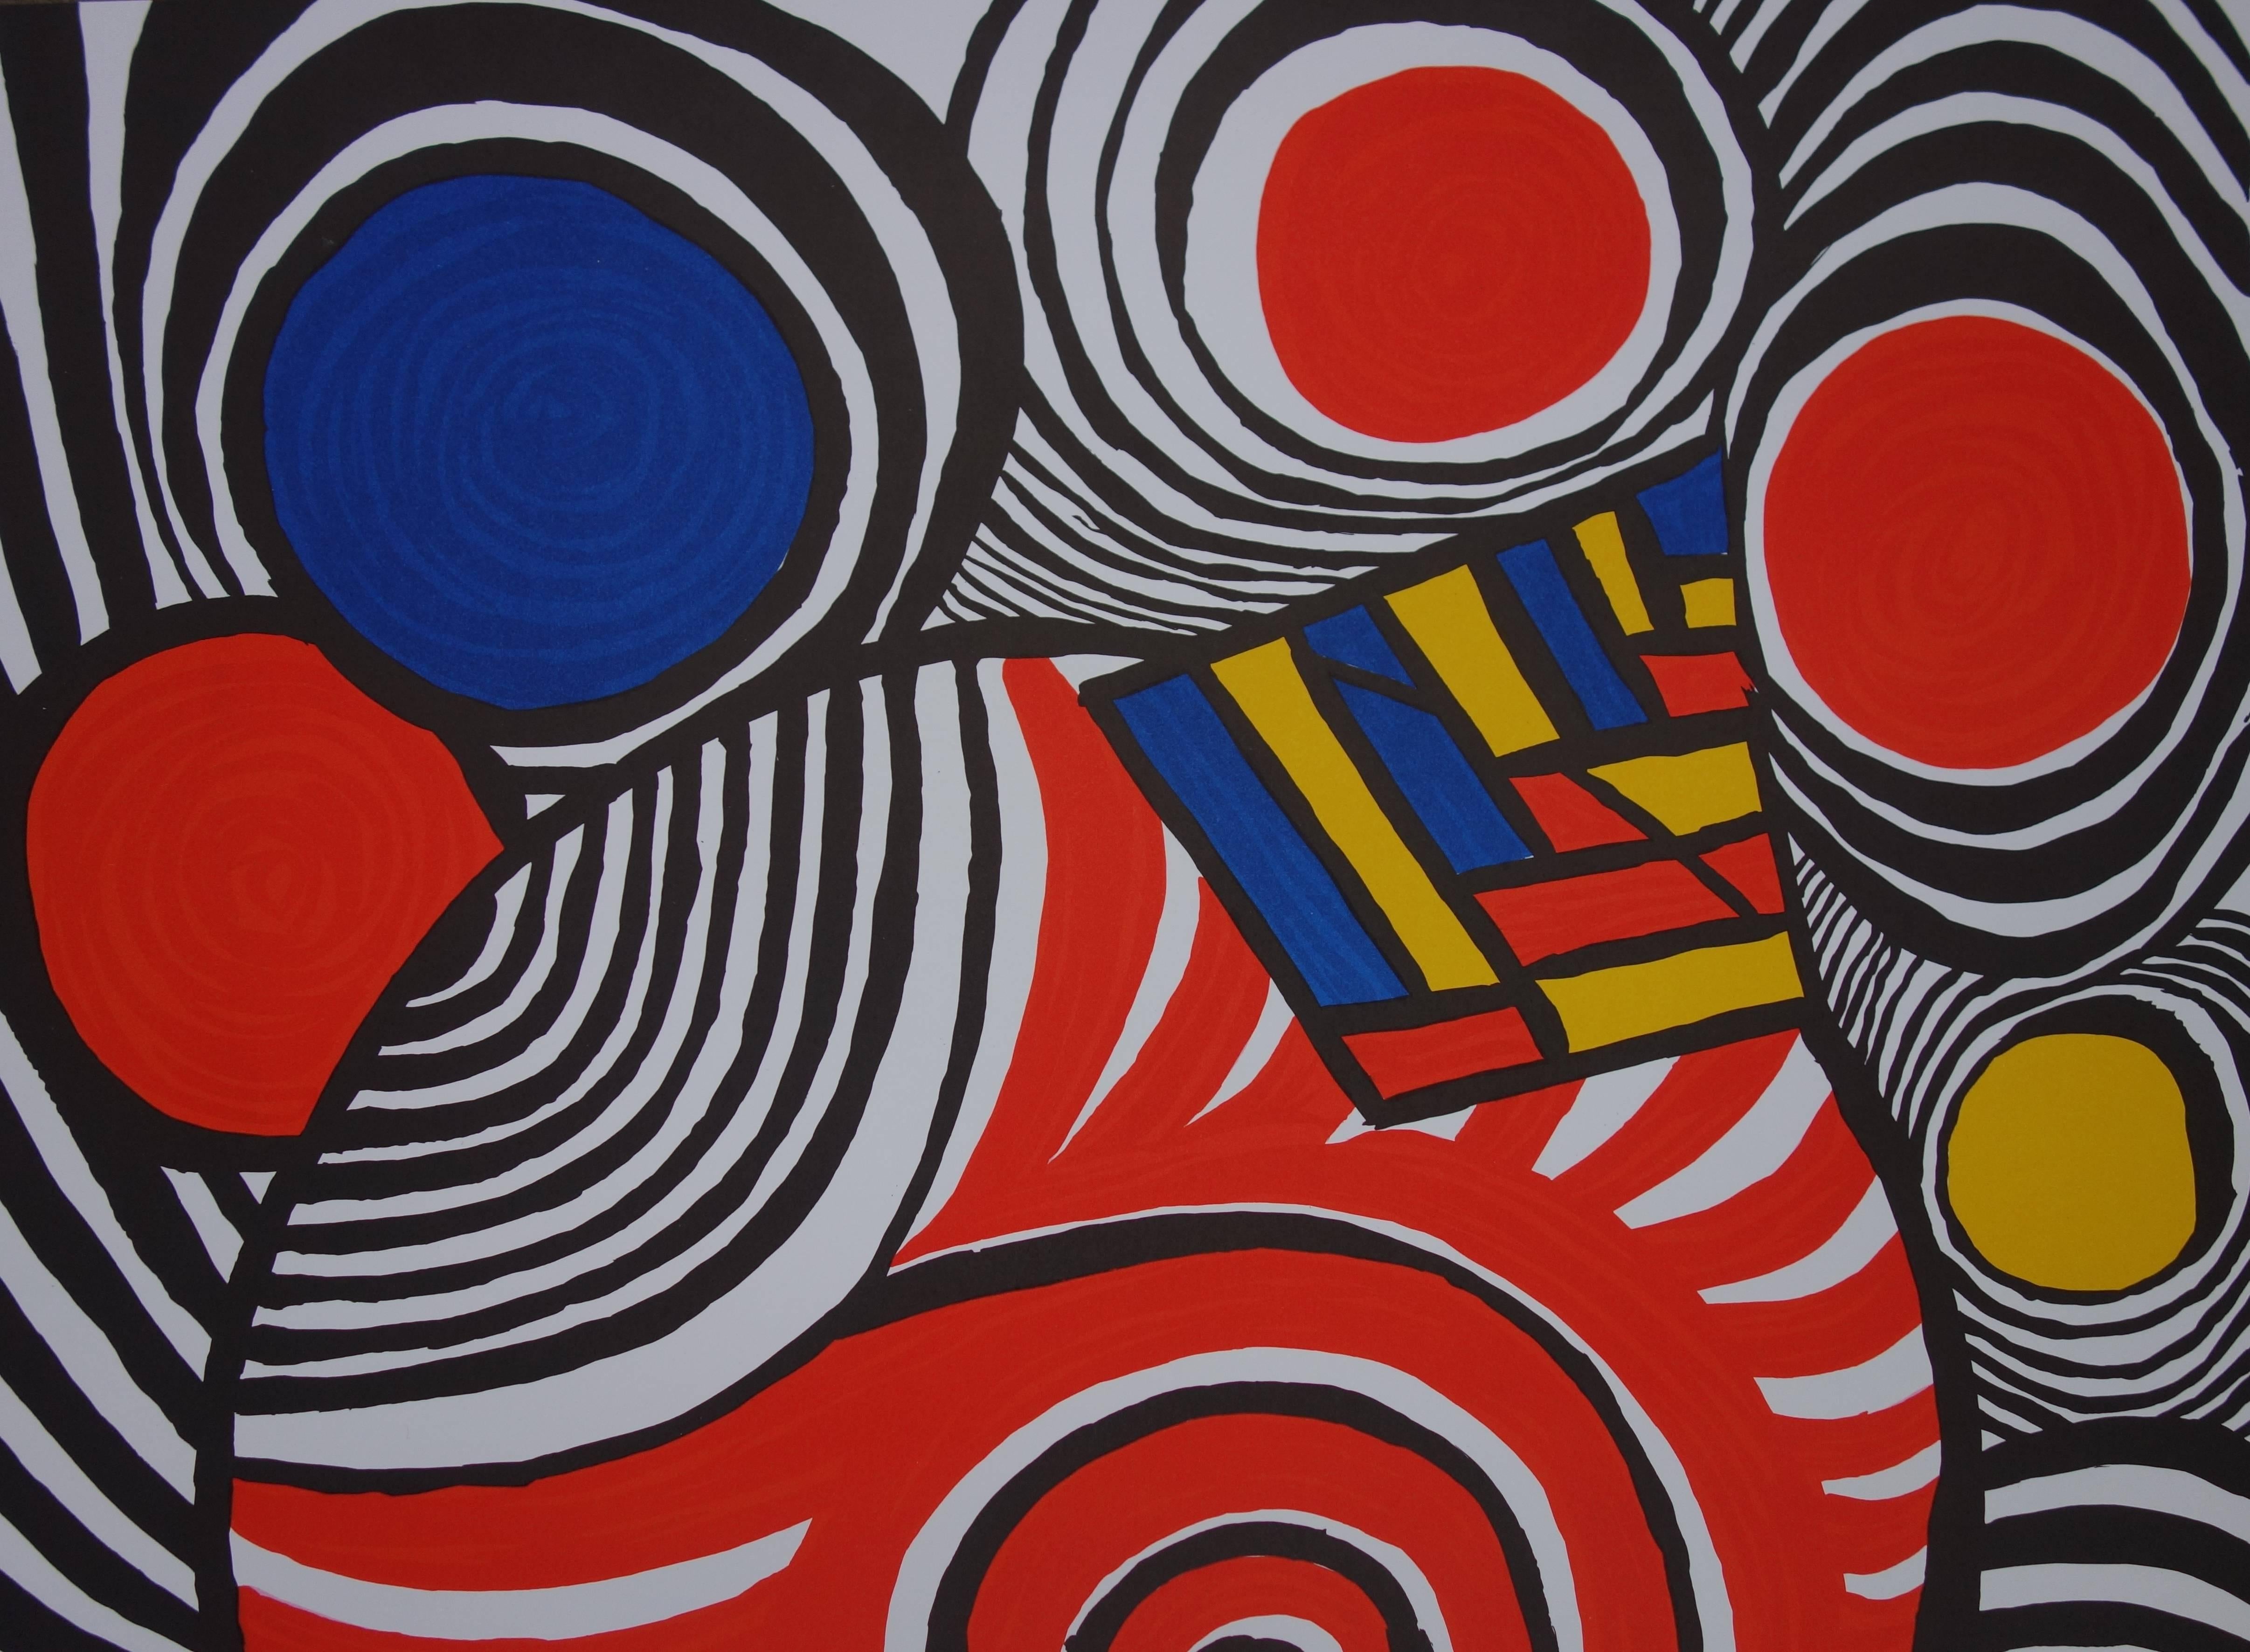 Les Travestis du Reel - Lithographienplakat - 1979 (Geometrische Abstraktion), Print, von (after) Alexander Calder